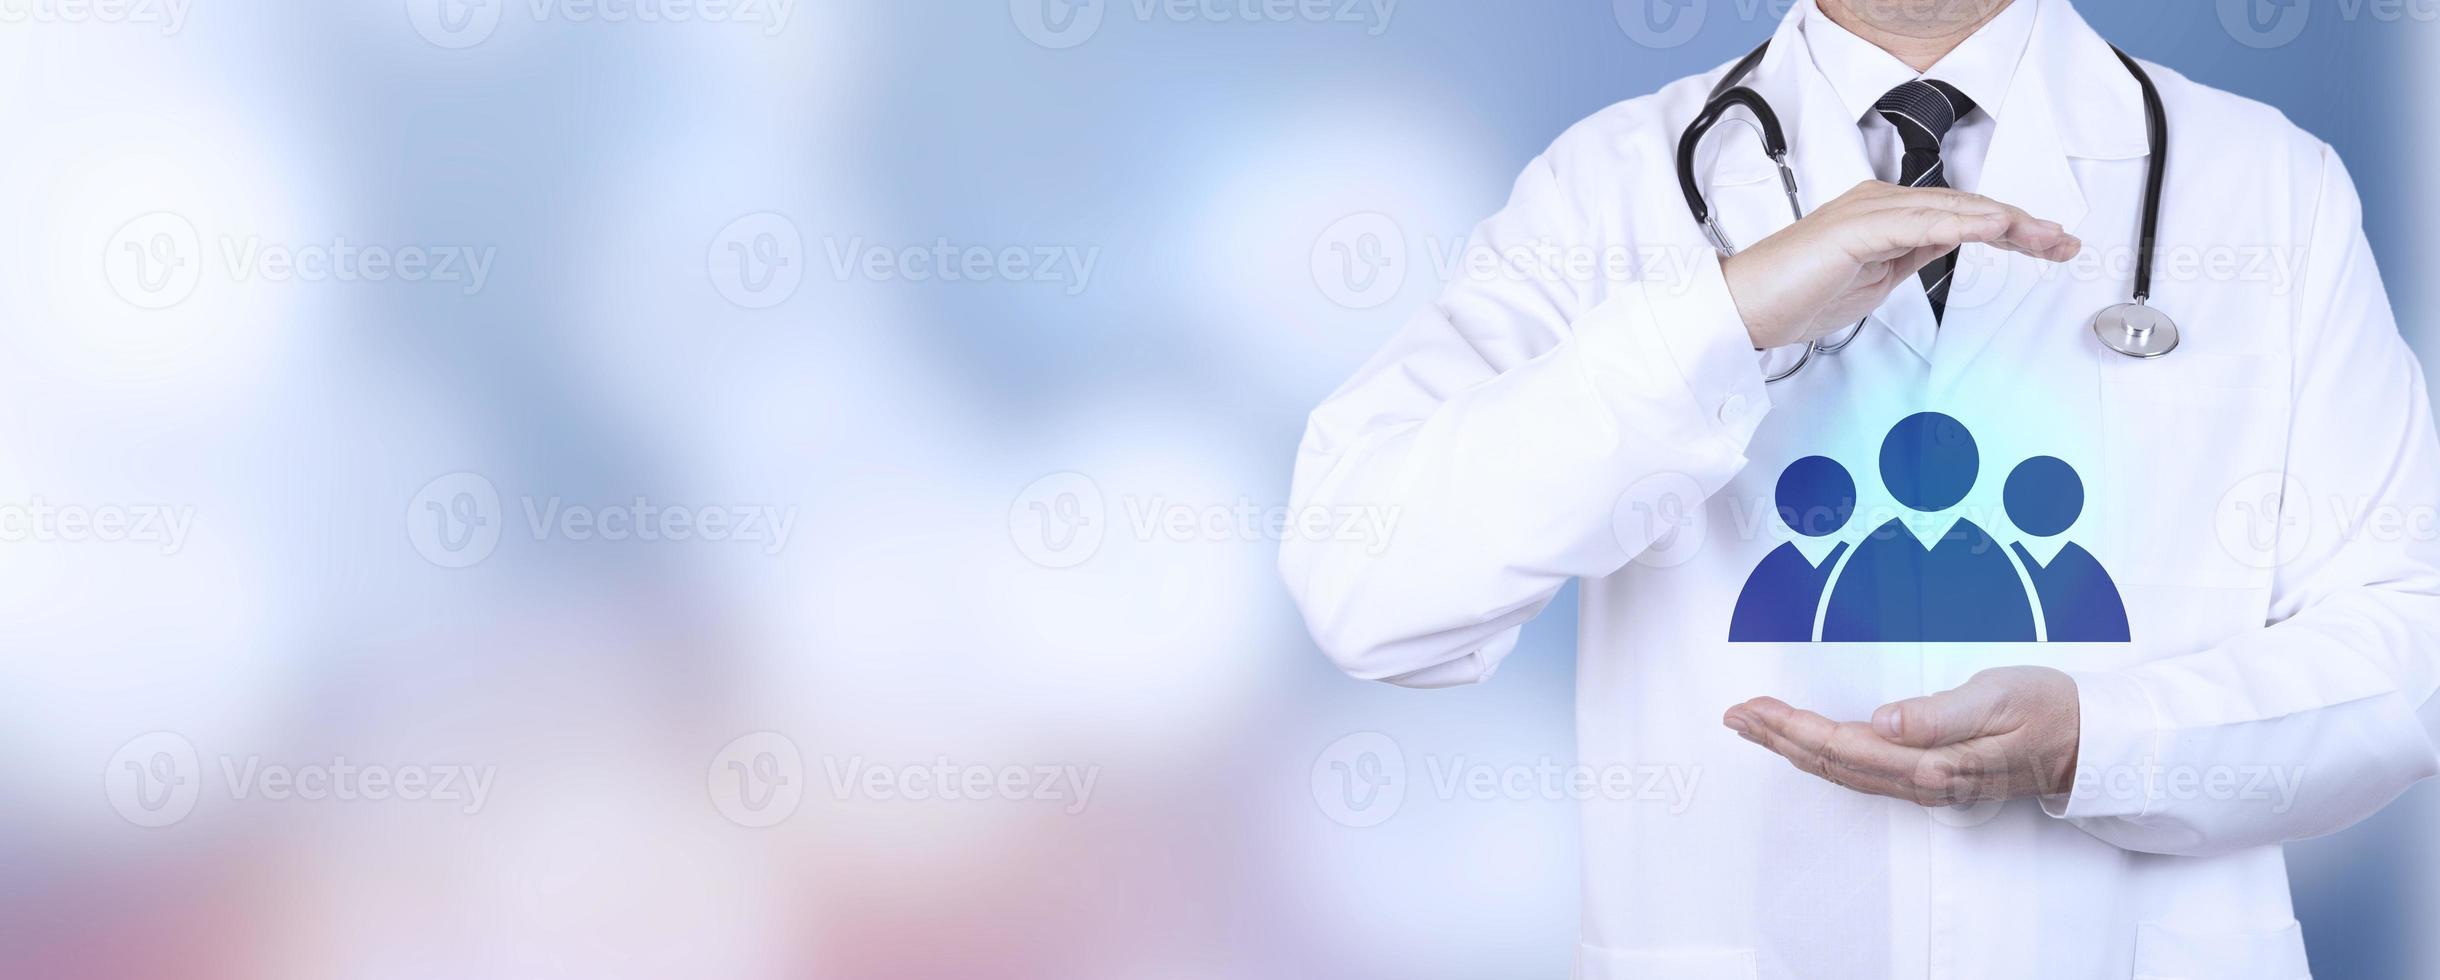 santé, assurance médicale, assurance-vie pour toute la famille. un médecin praticien en blouse blanche avec un geste protecteur de la main et un symbole familial. espace de copie. photo